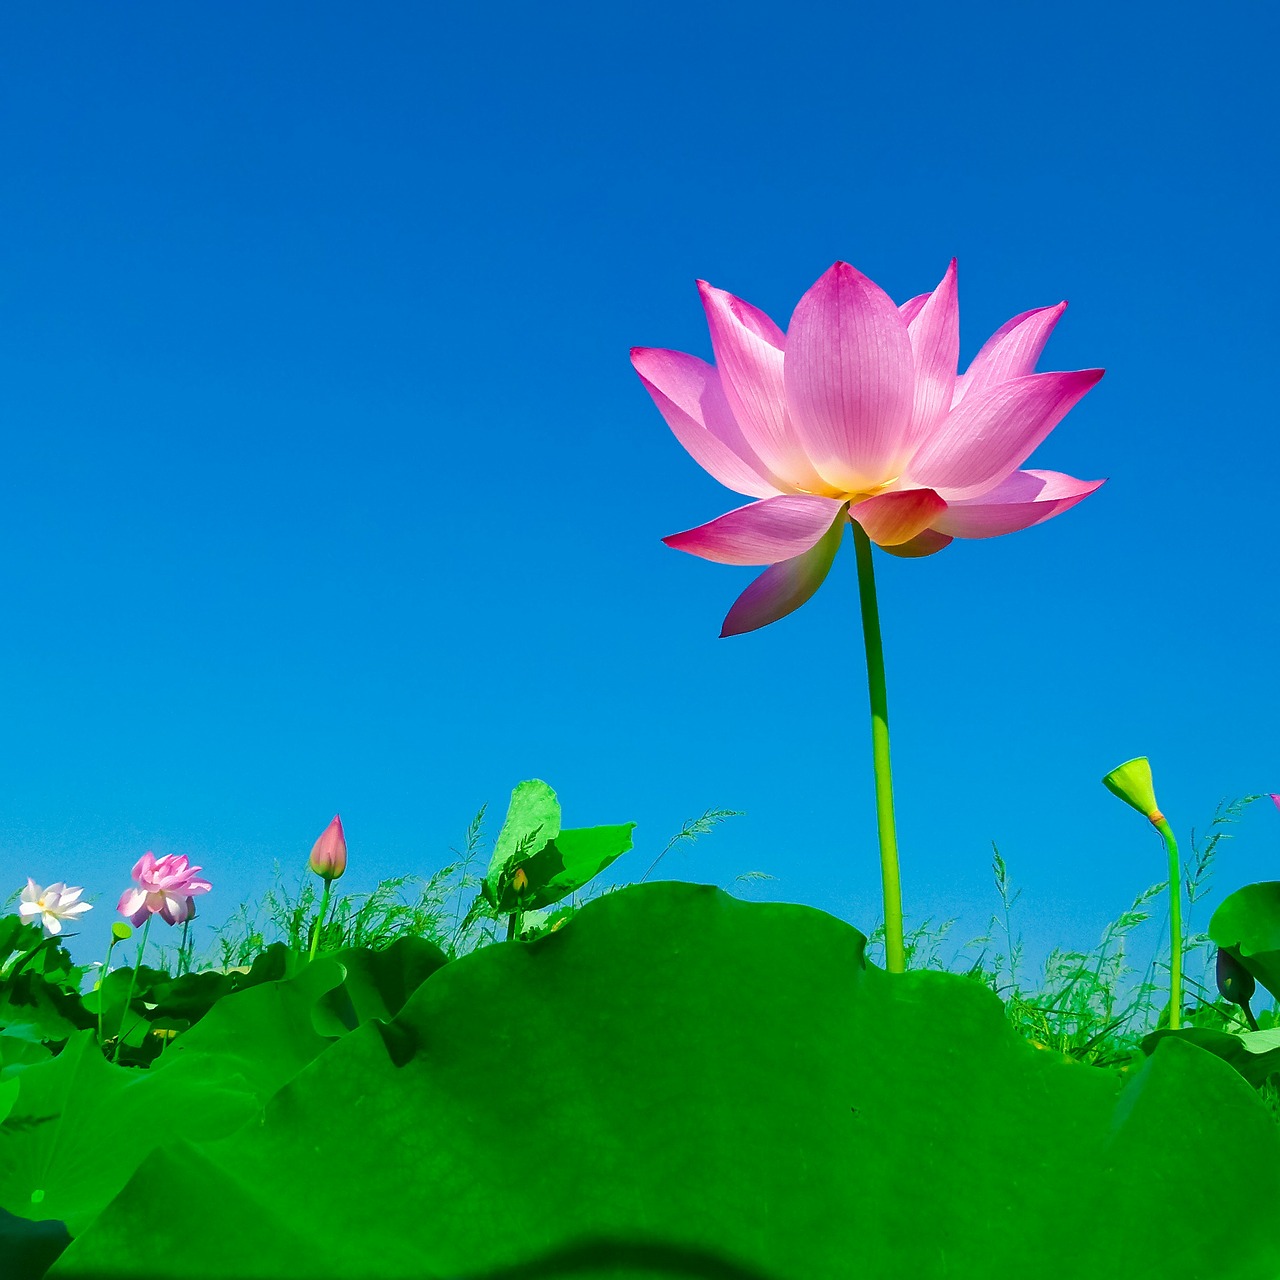 Image - lotus lotus leaf flowering flower